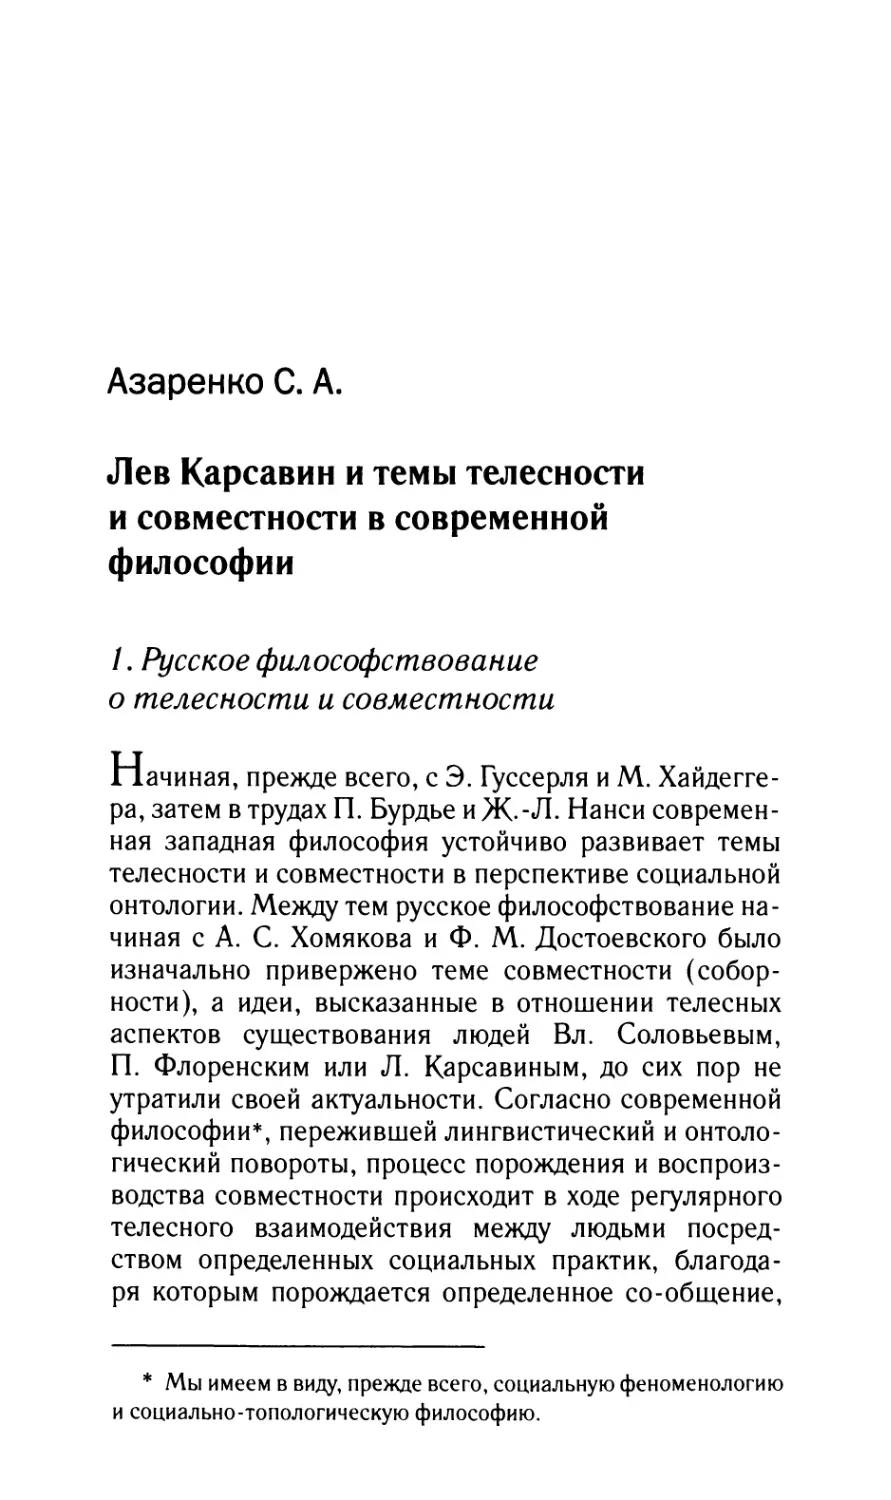 Азаренко С.А. Лев Карсавин и темы телесности и совместности в современной философии